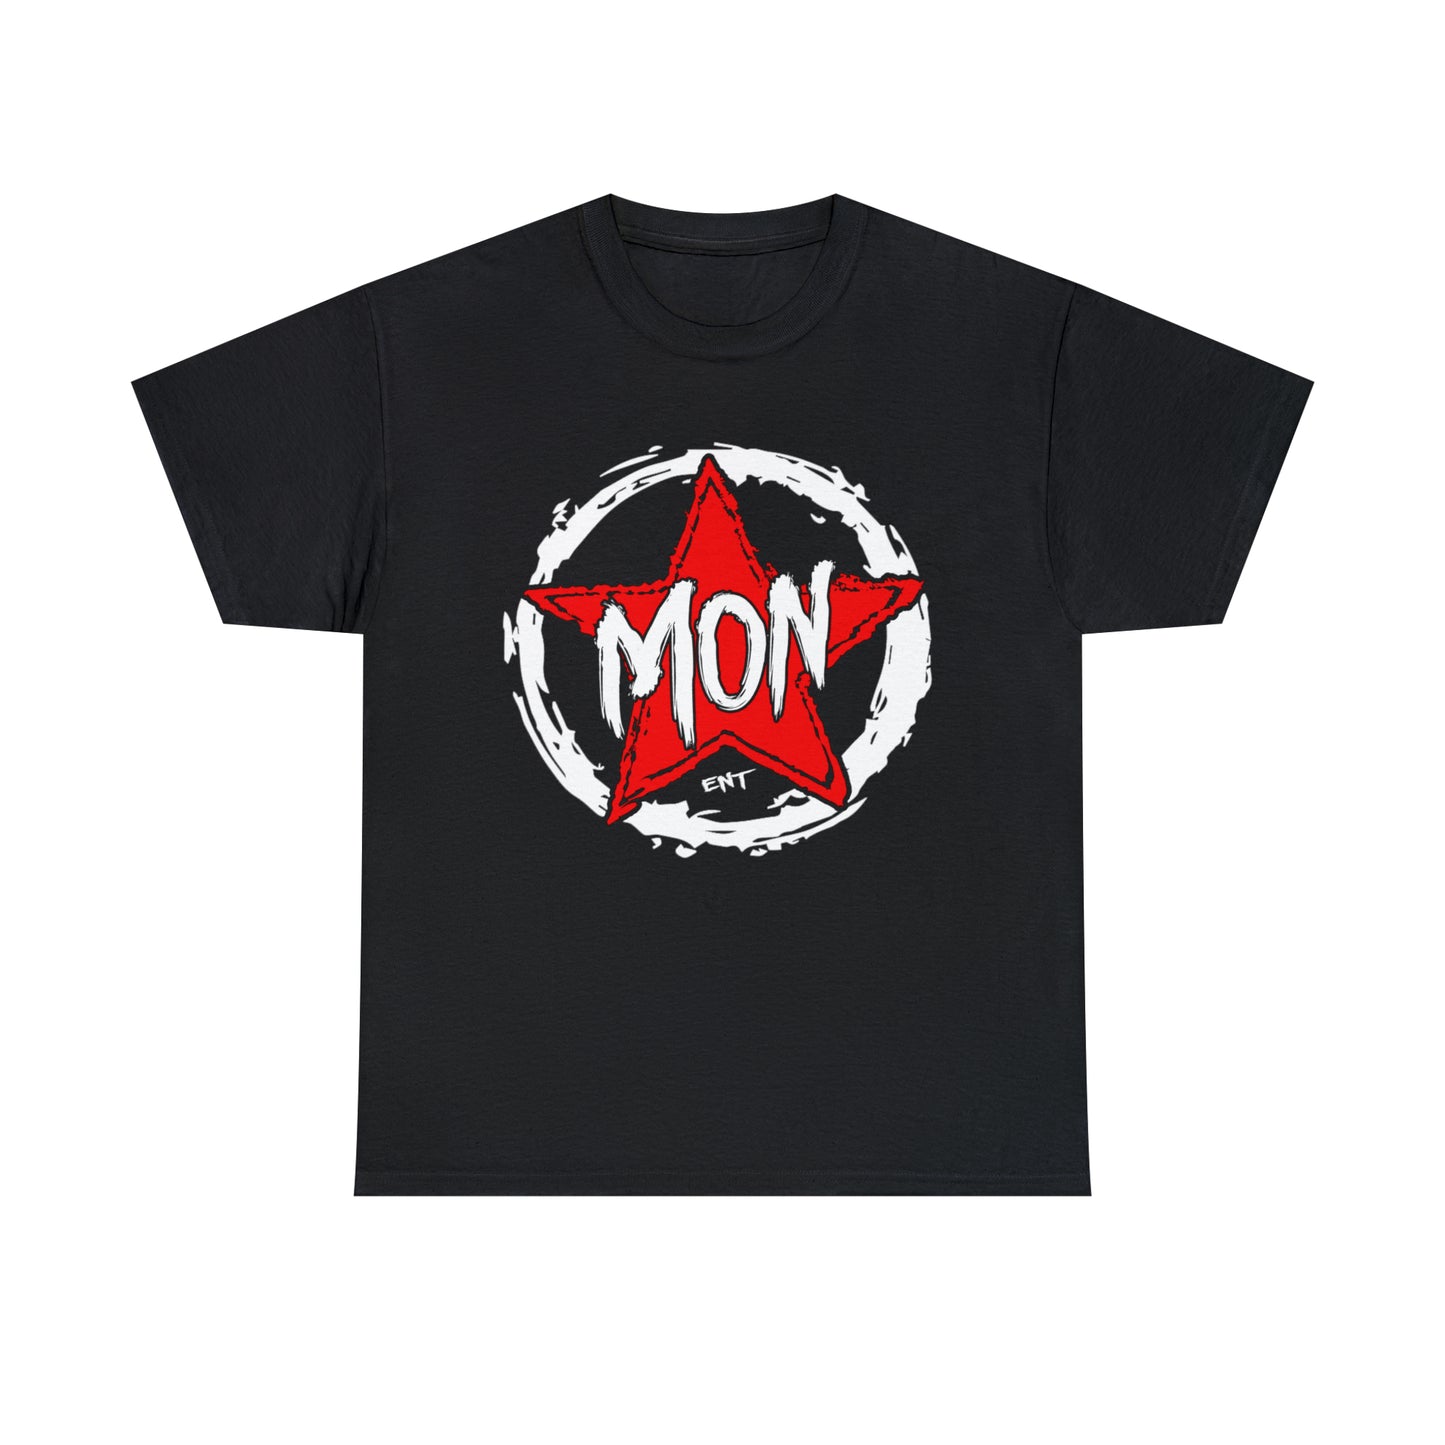 Monstar T-Shirt